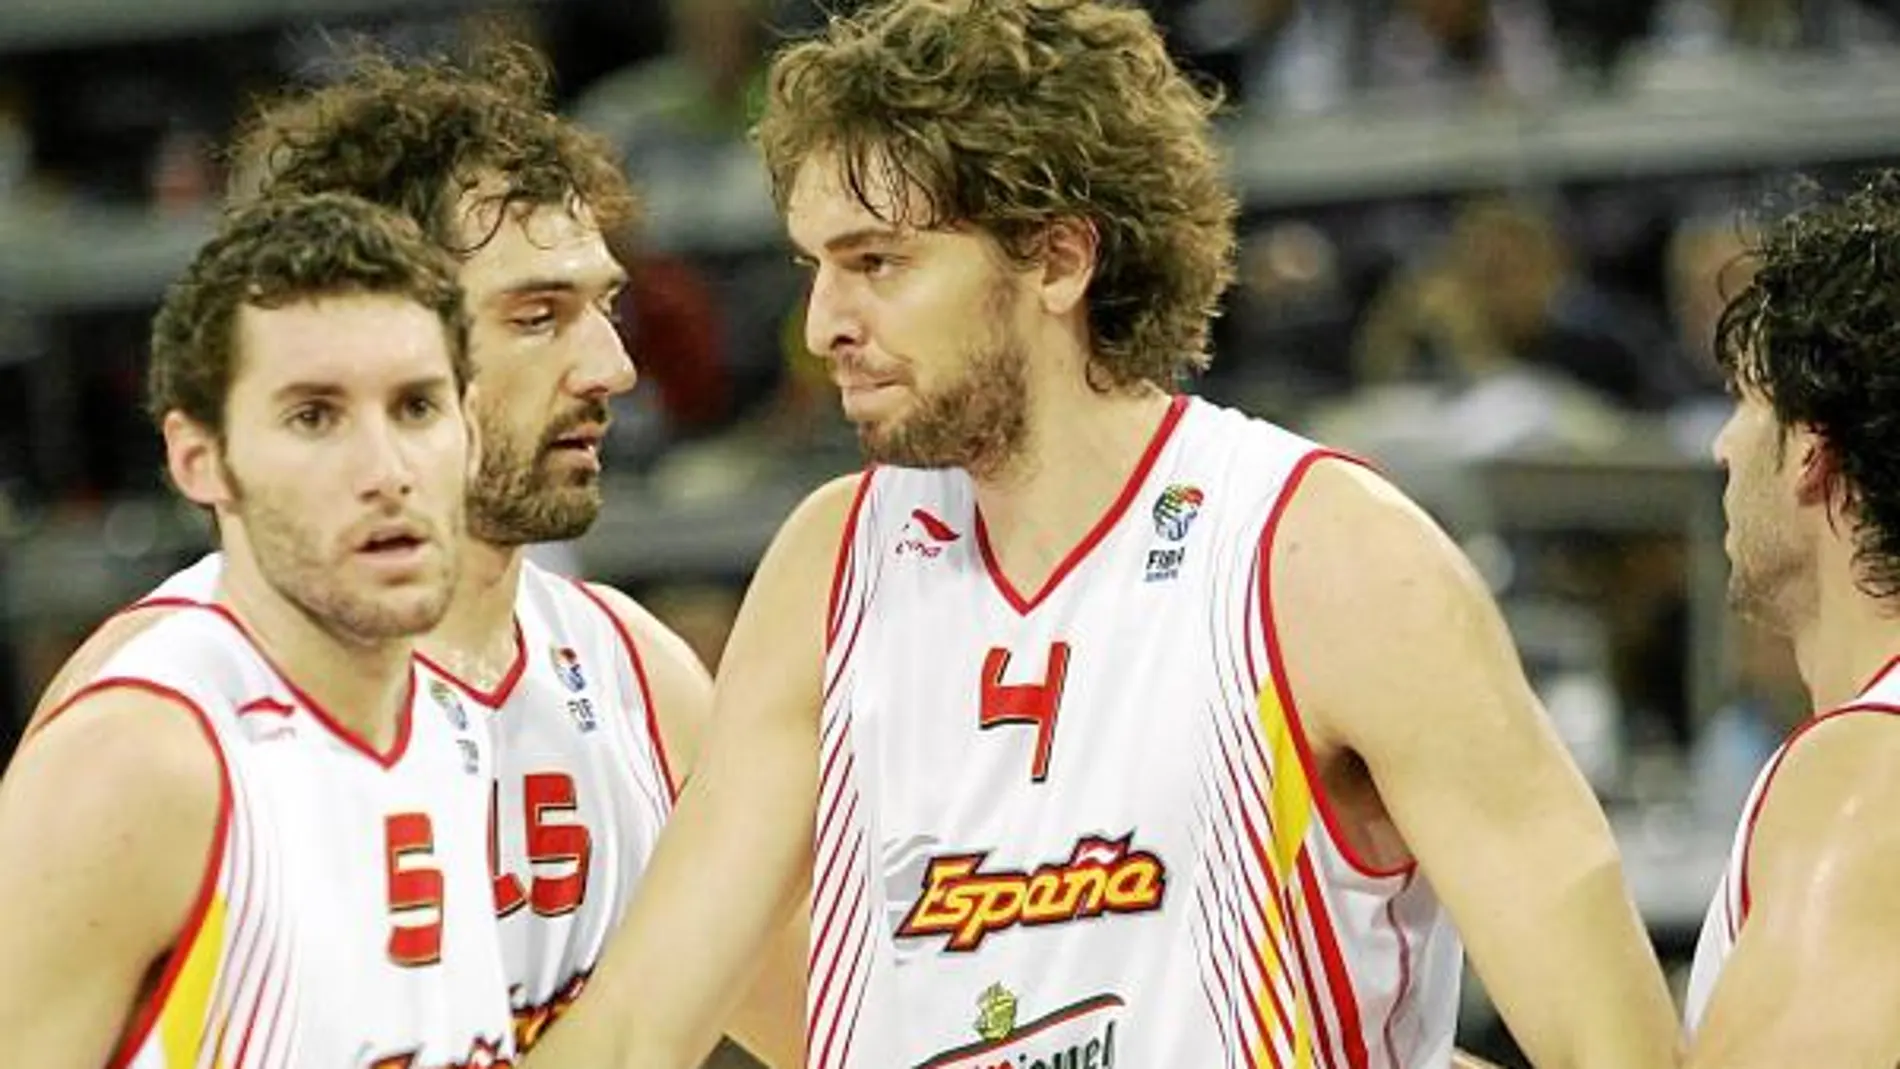 Rudy y Berni, invitados de lujo en el Basket Campus 2010, son compañeros de selección desde 2004